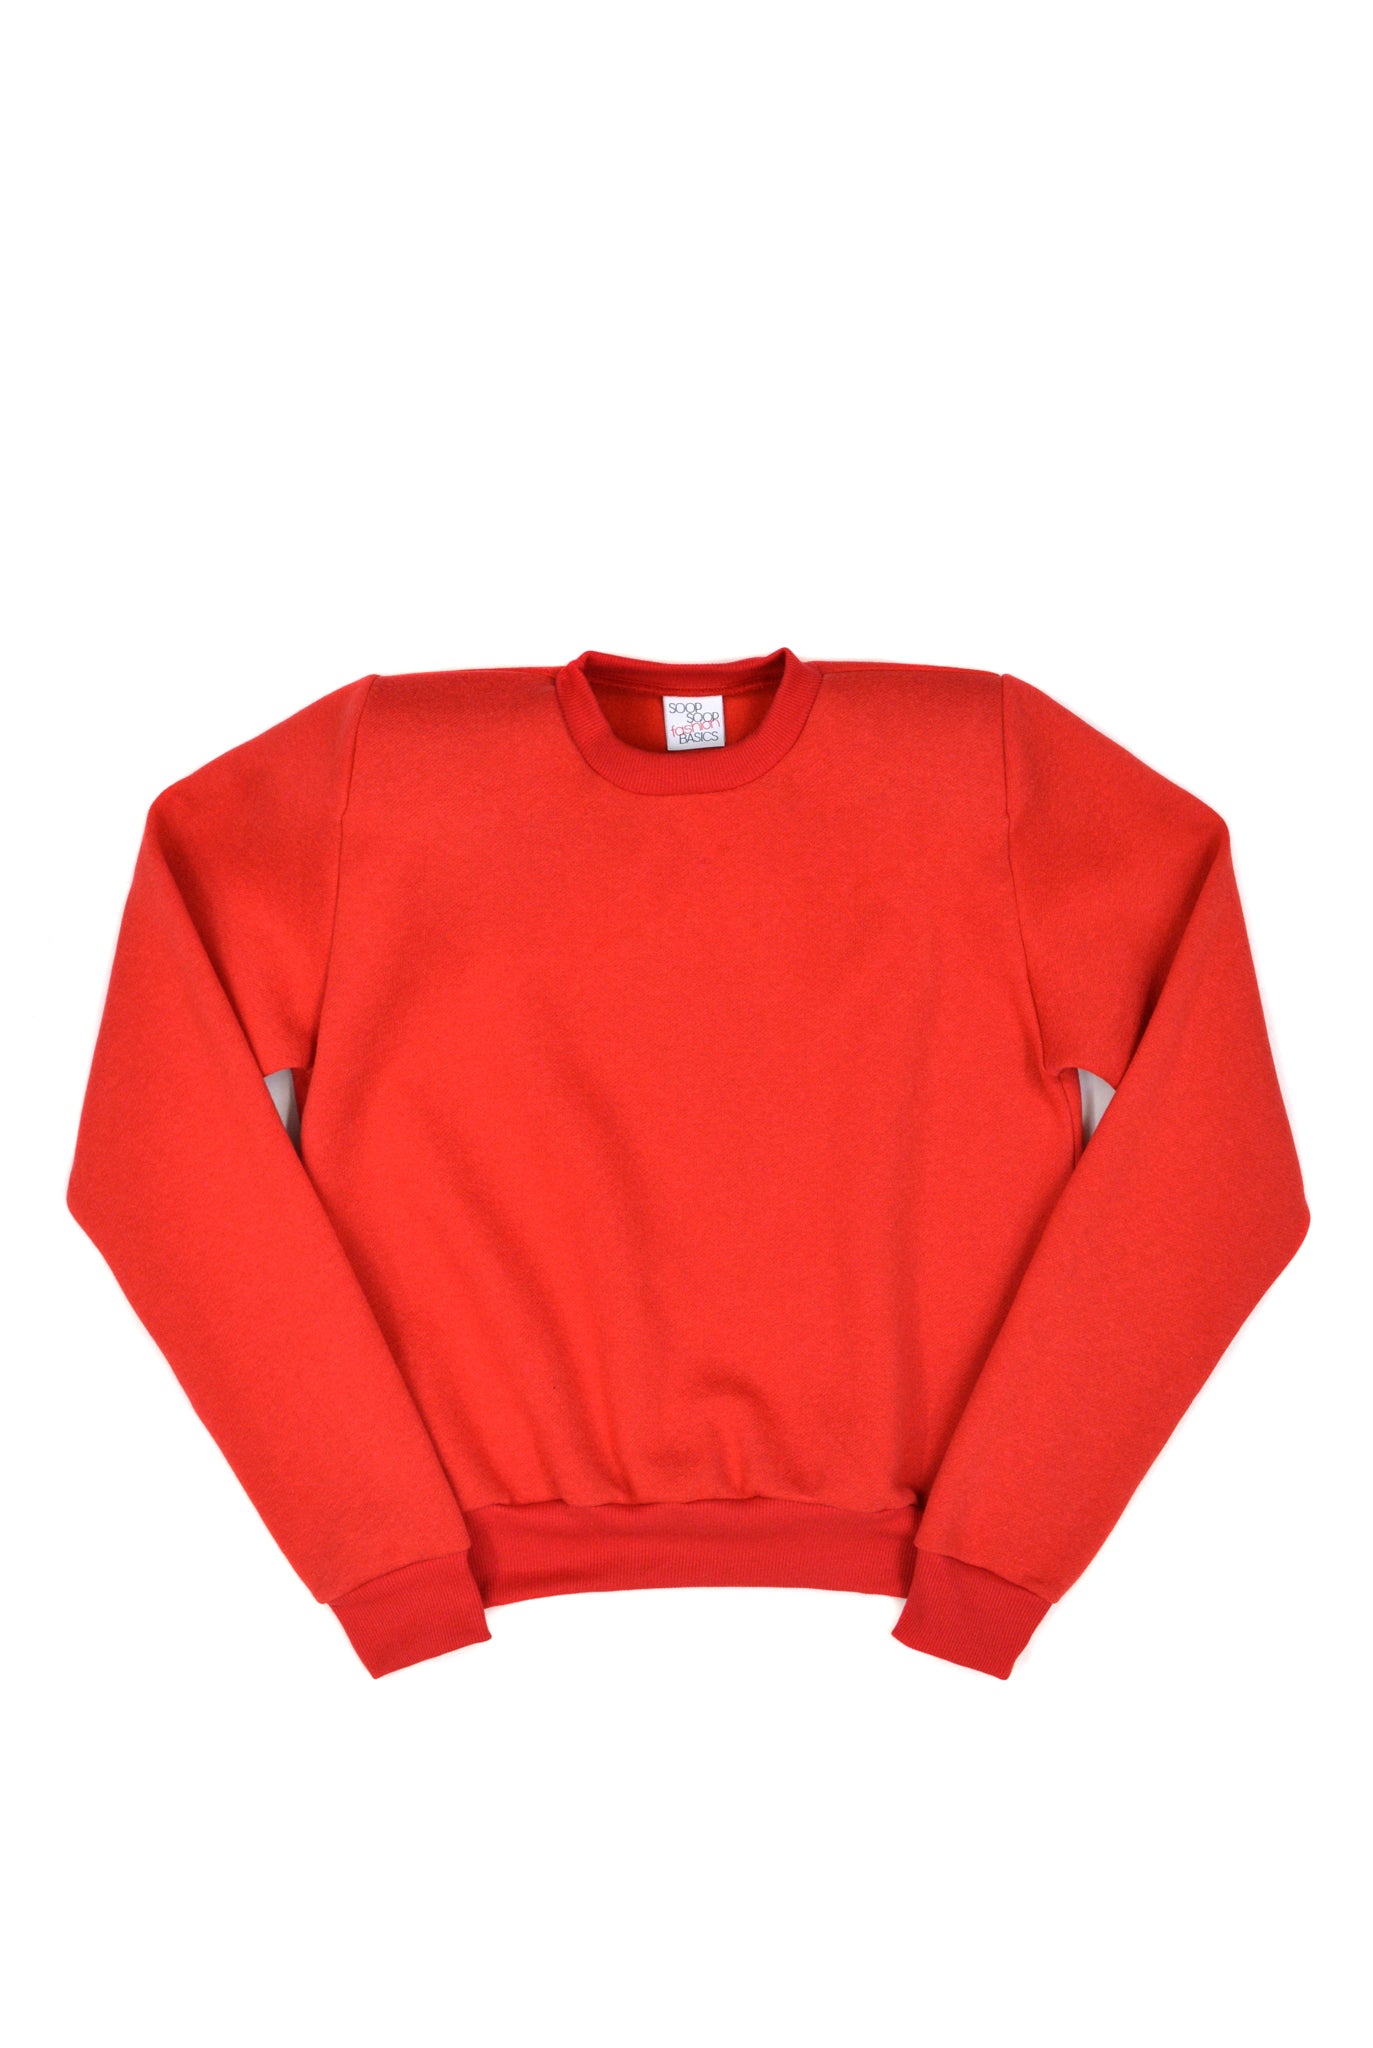 SOOP SOOP Shoulder Pad Sweatshirt, Red